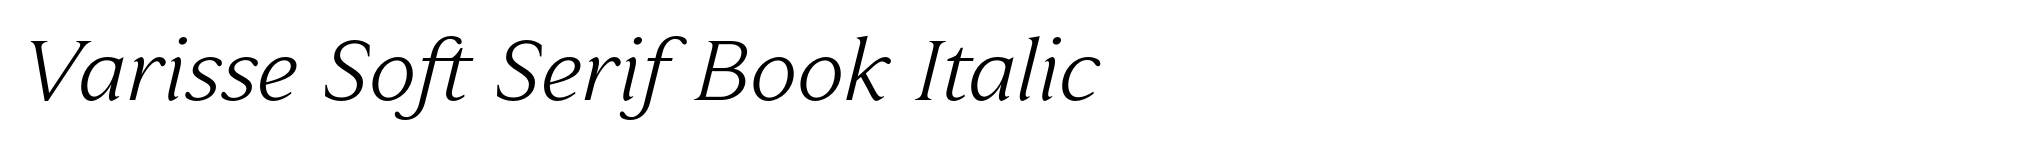 Varisse Soft Serif Book Italic image